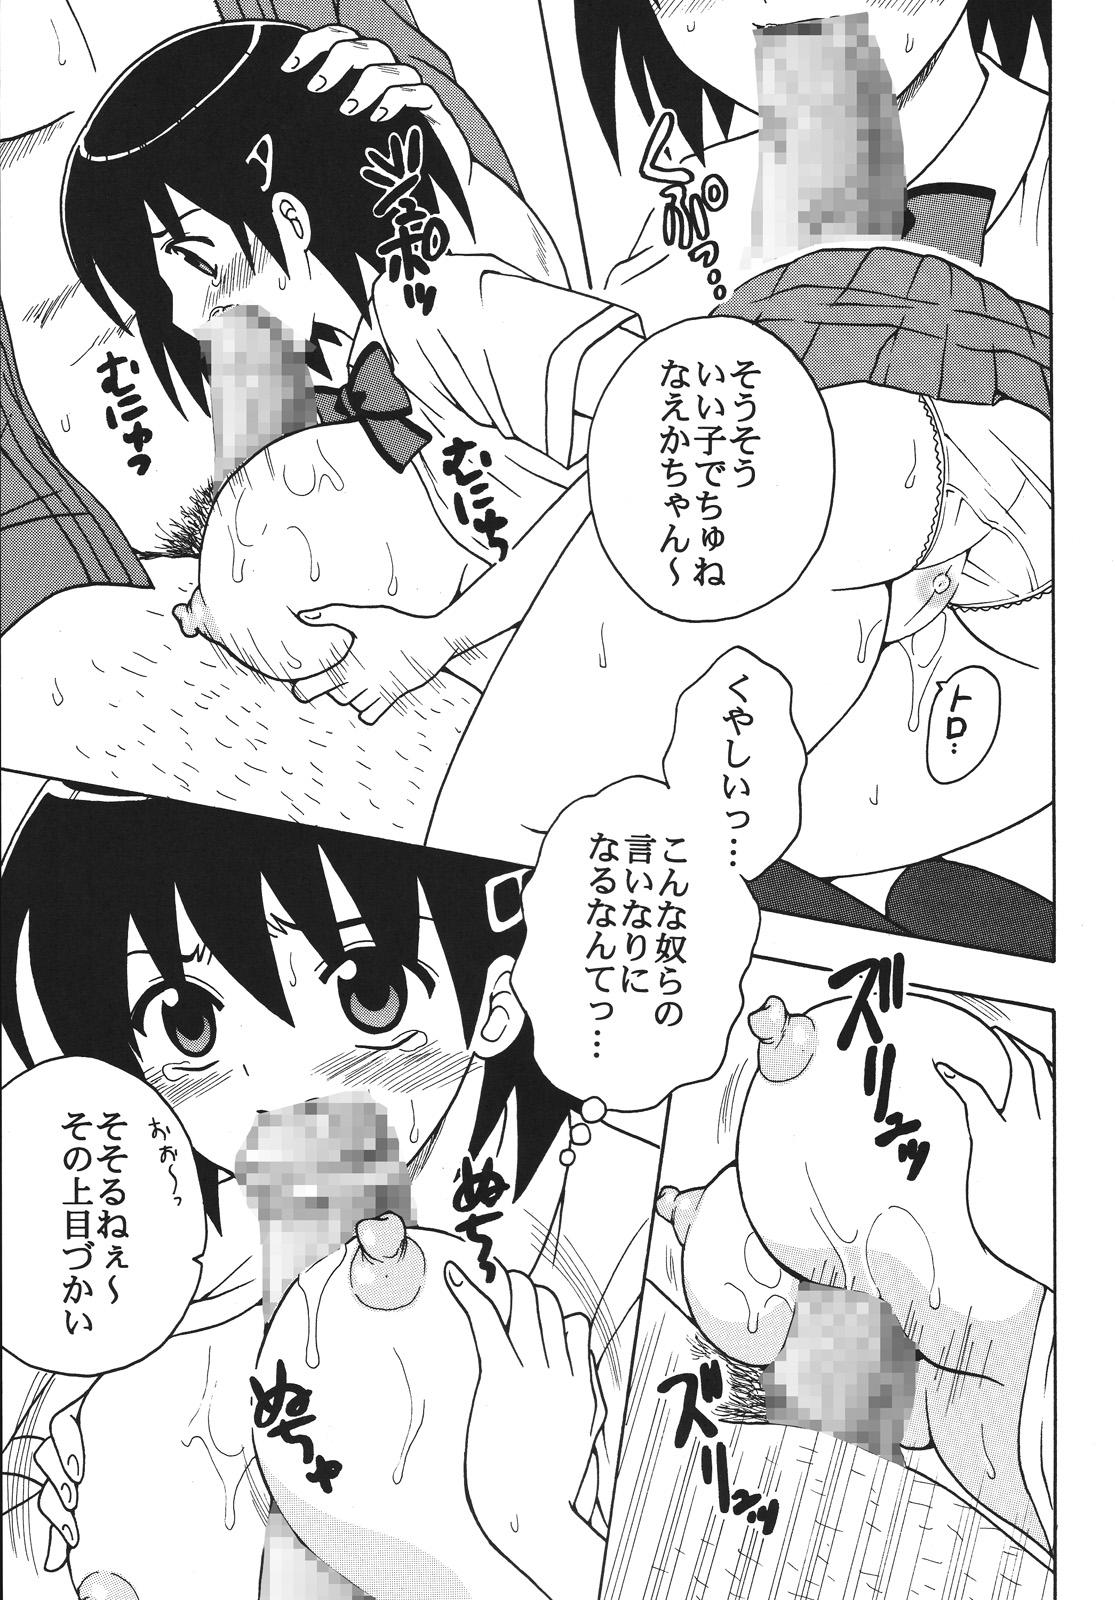 Workout Nakadashi Maid no Hinkaku 1 - Kamen no maid guy Short - Page 8